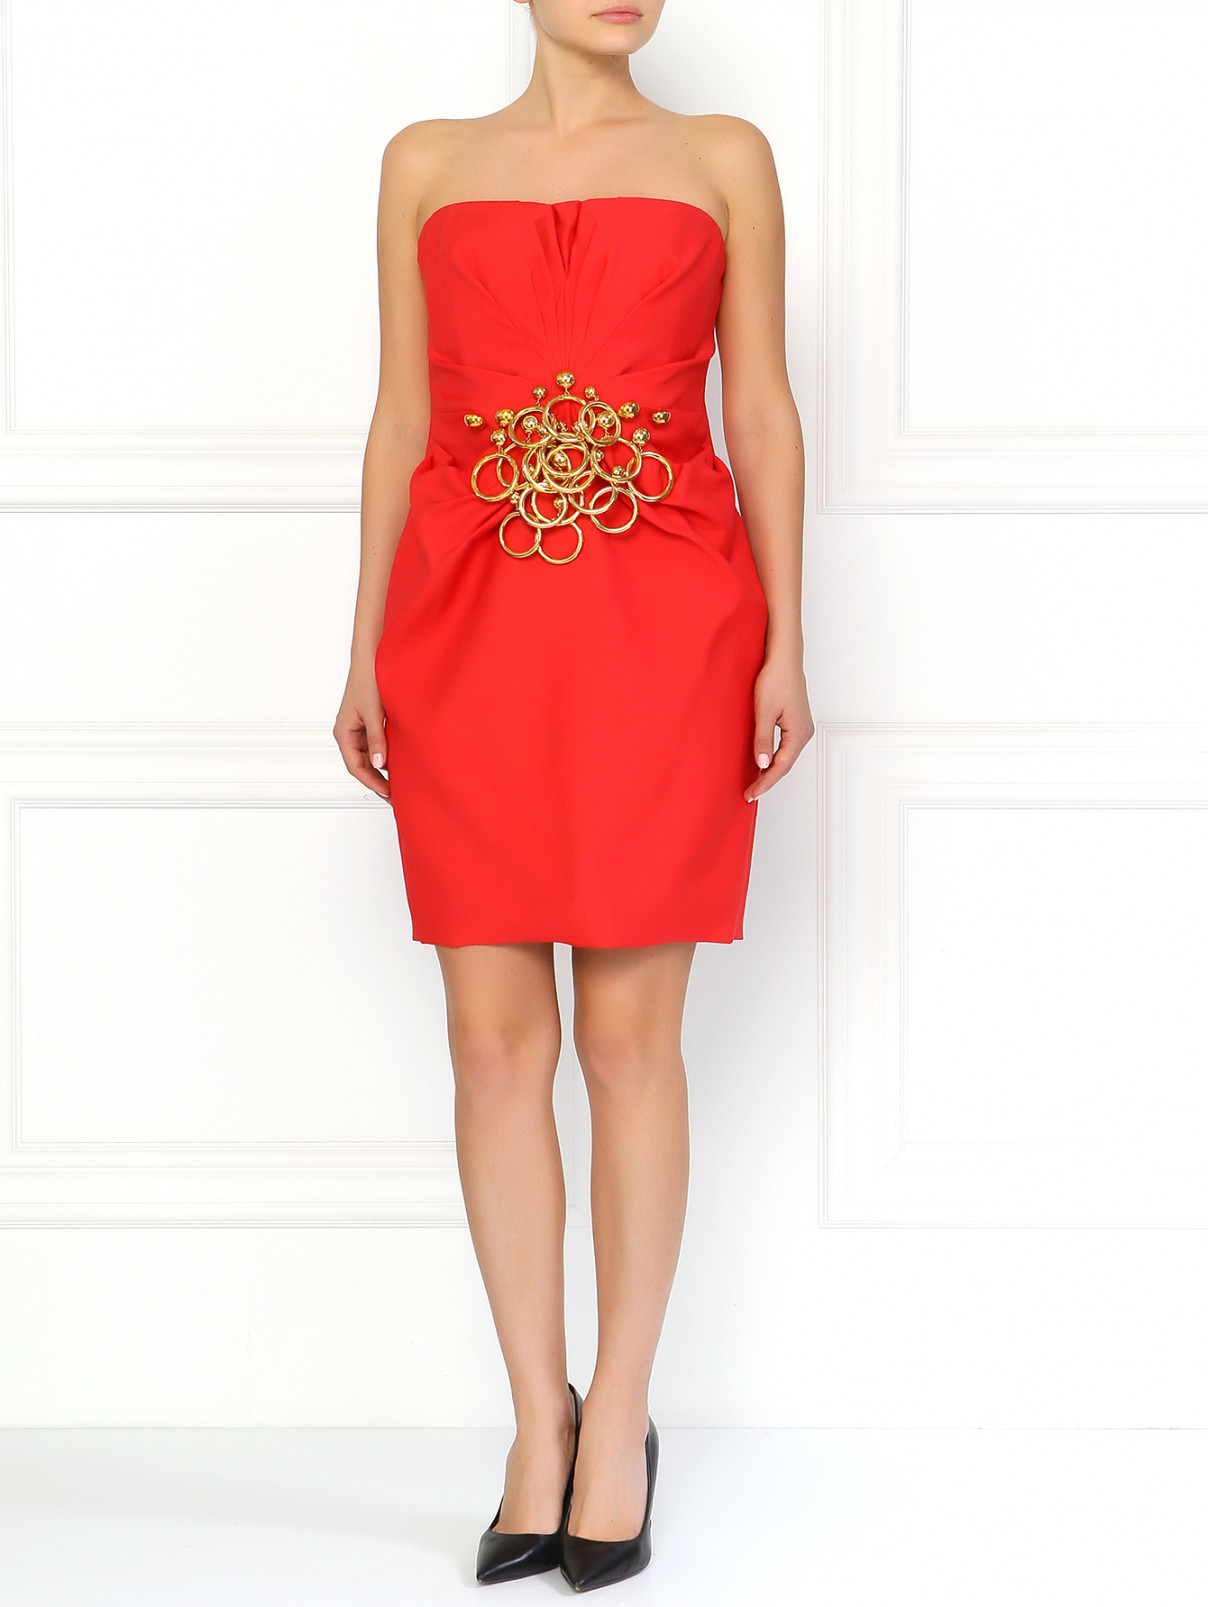 Мини-платье с фурнитурой Moschino  –  Модель Общий вид  – Цвет:  Красный